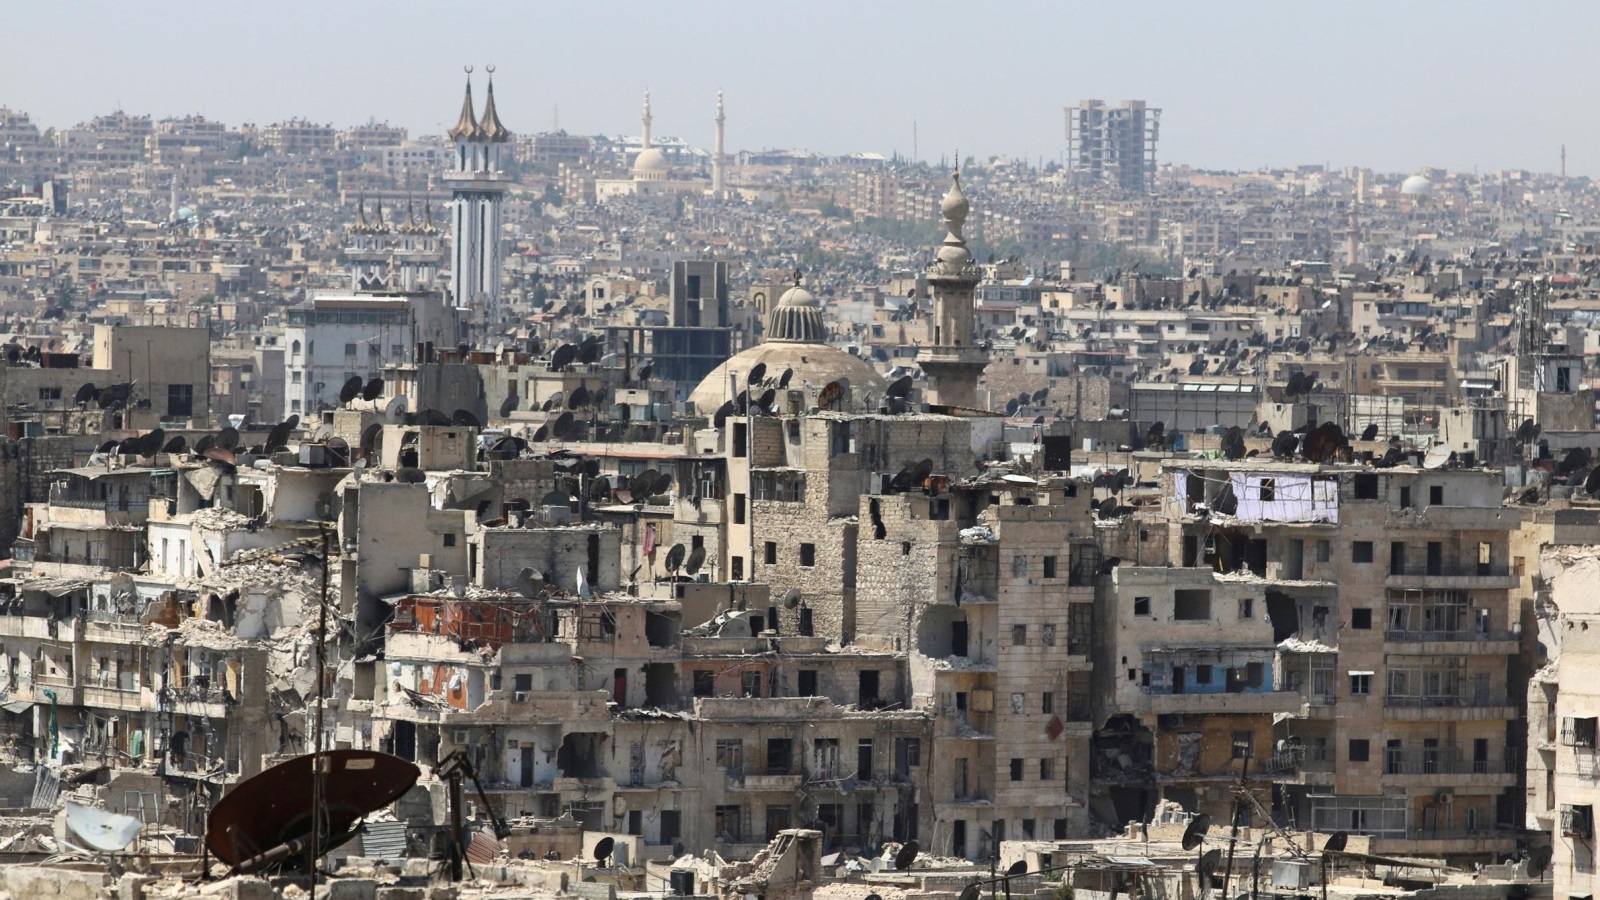 ‪مناطق حلب الواقعة تحت سيطرة النظام السوري‬ مناطق حلب الواقعة تحت سيطرة النظام السوري (رويترز)